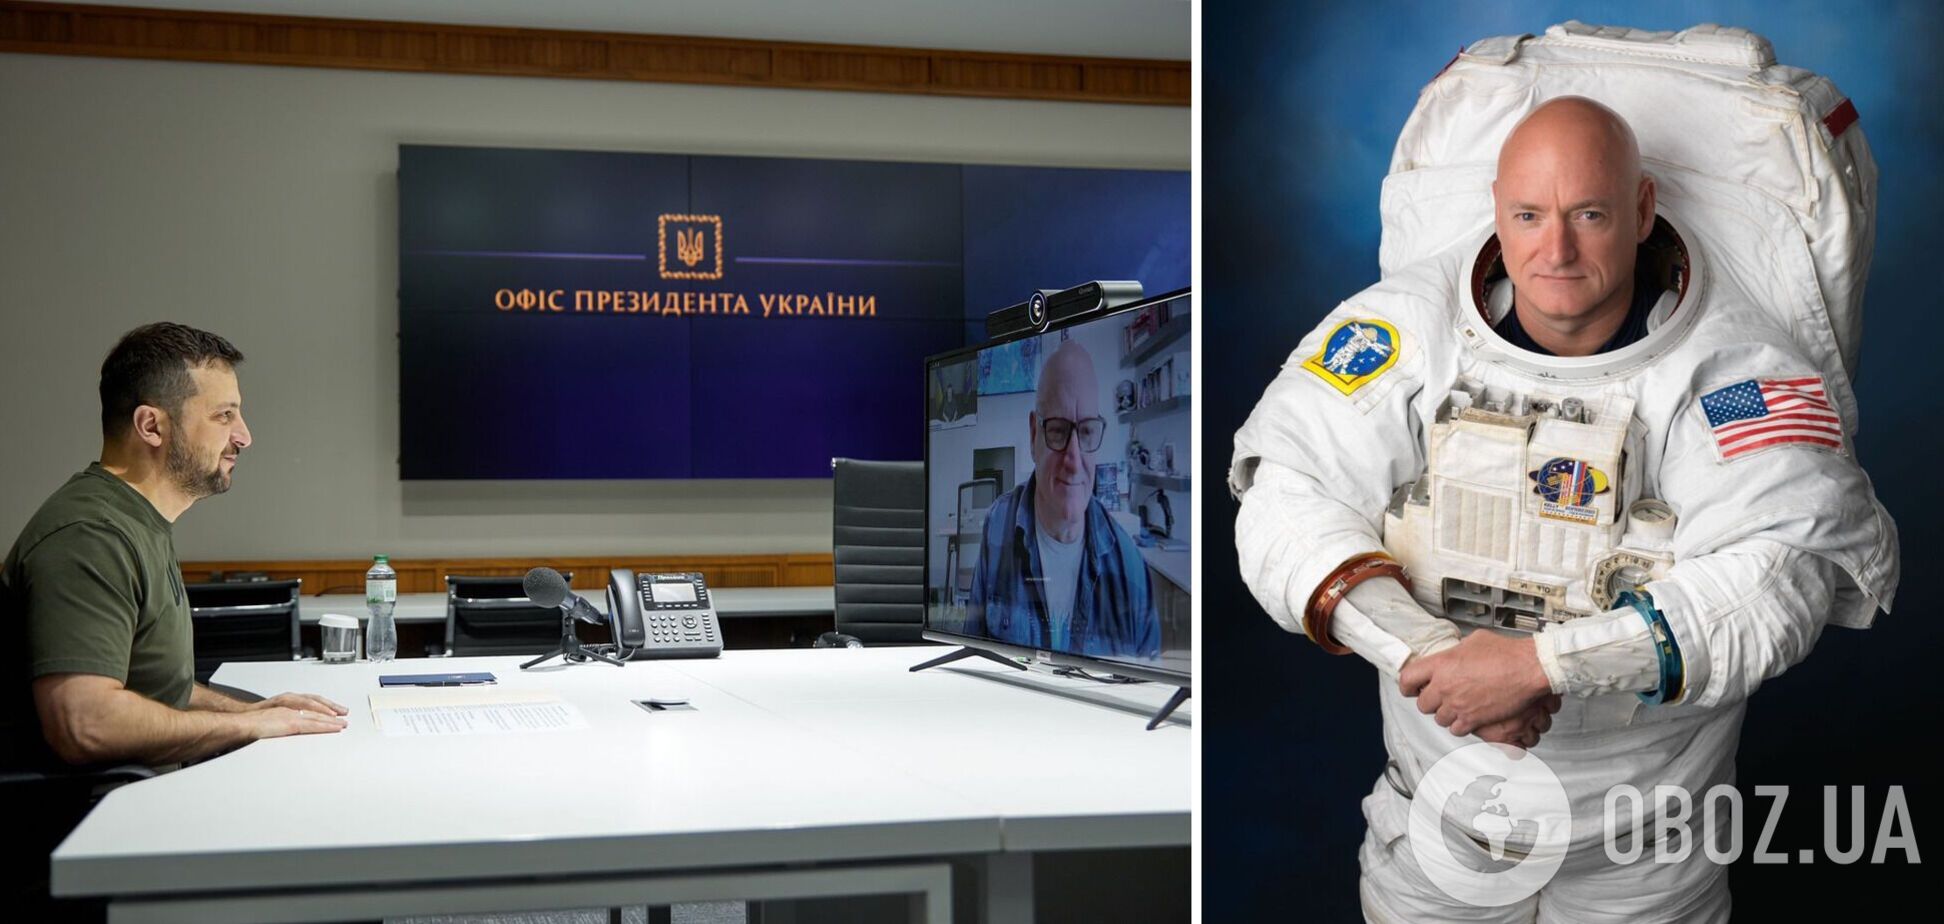 Астронавт Скотт Келли стал послом UNITED24 и подарил Украине машину скорой помощи